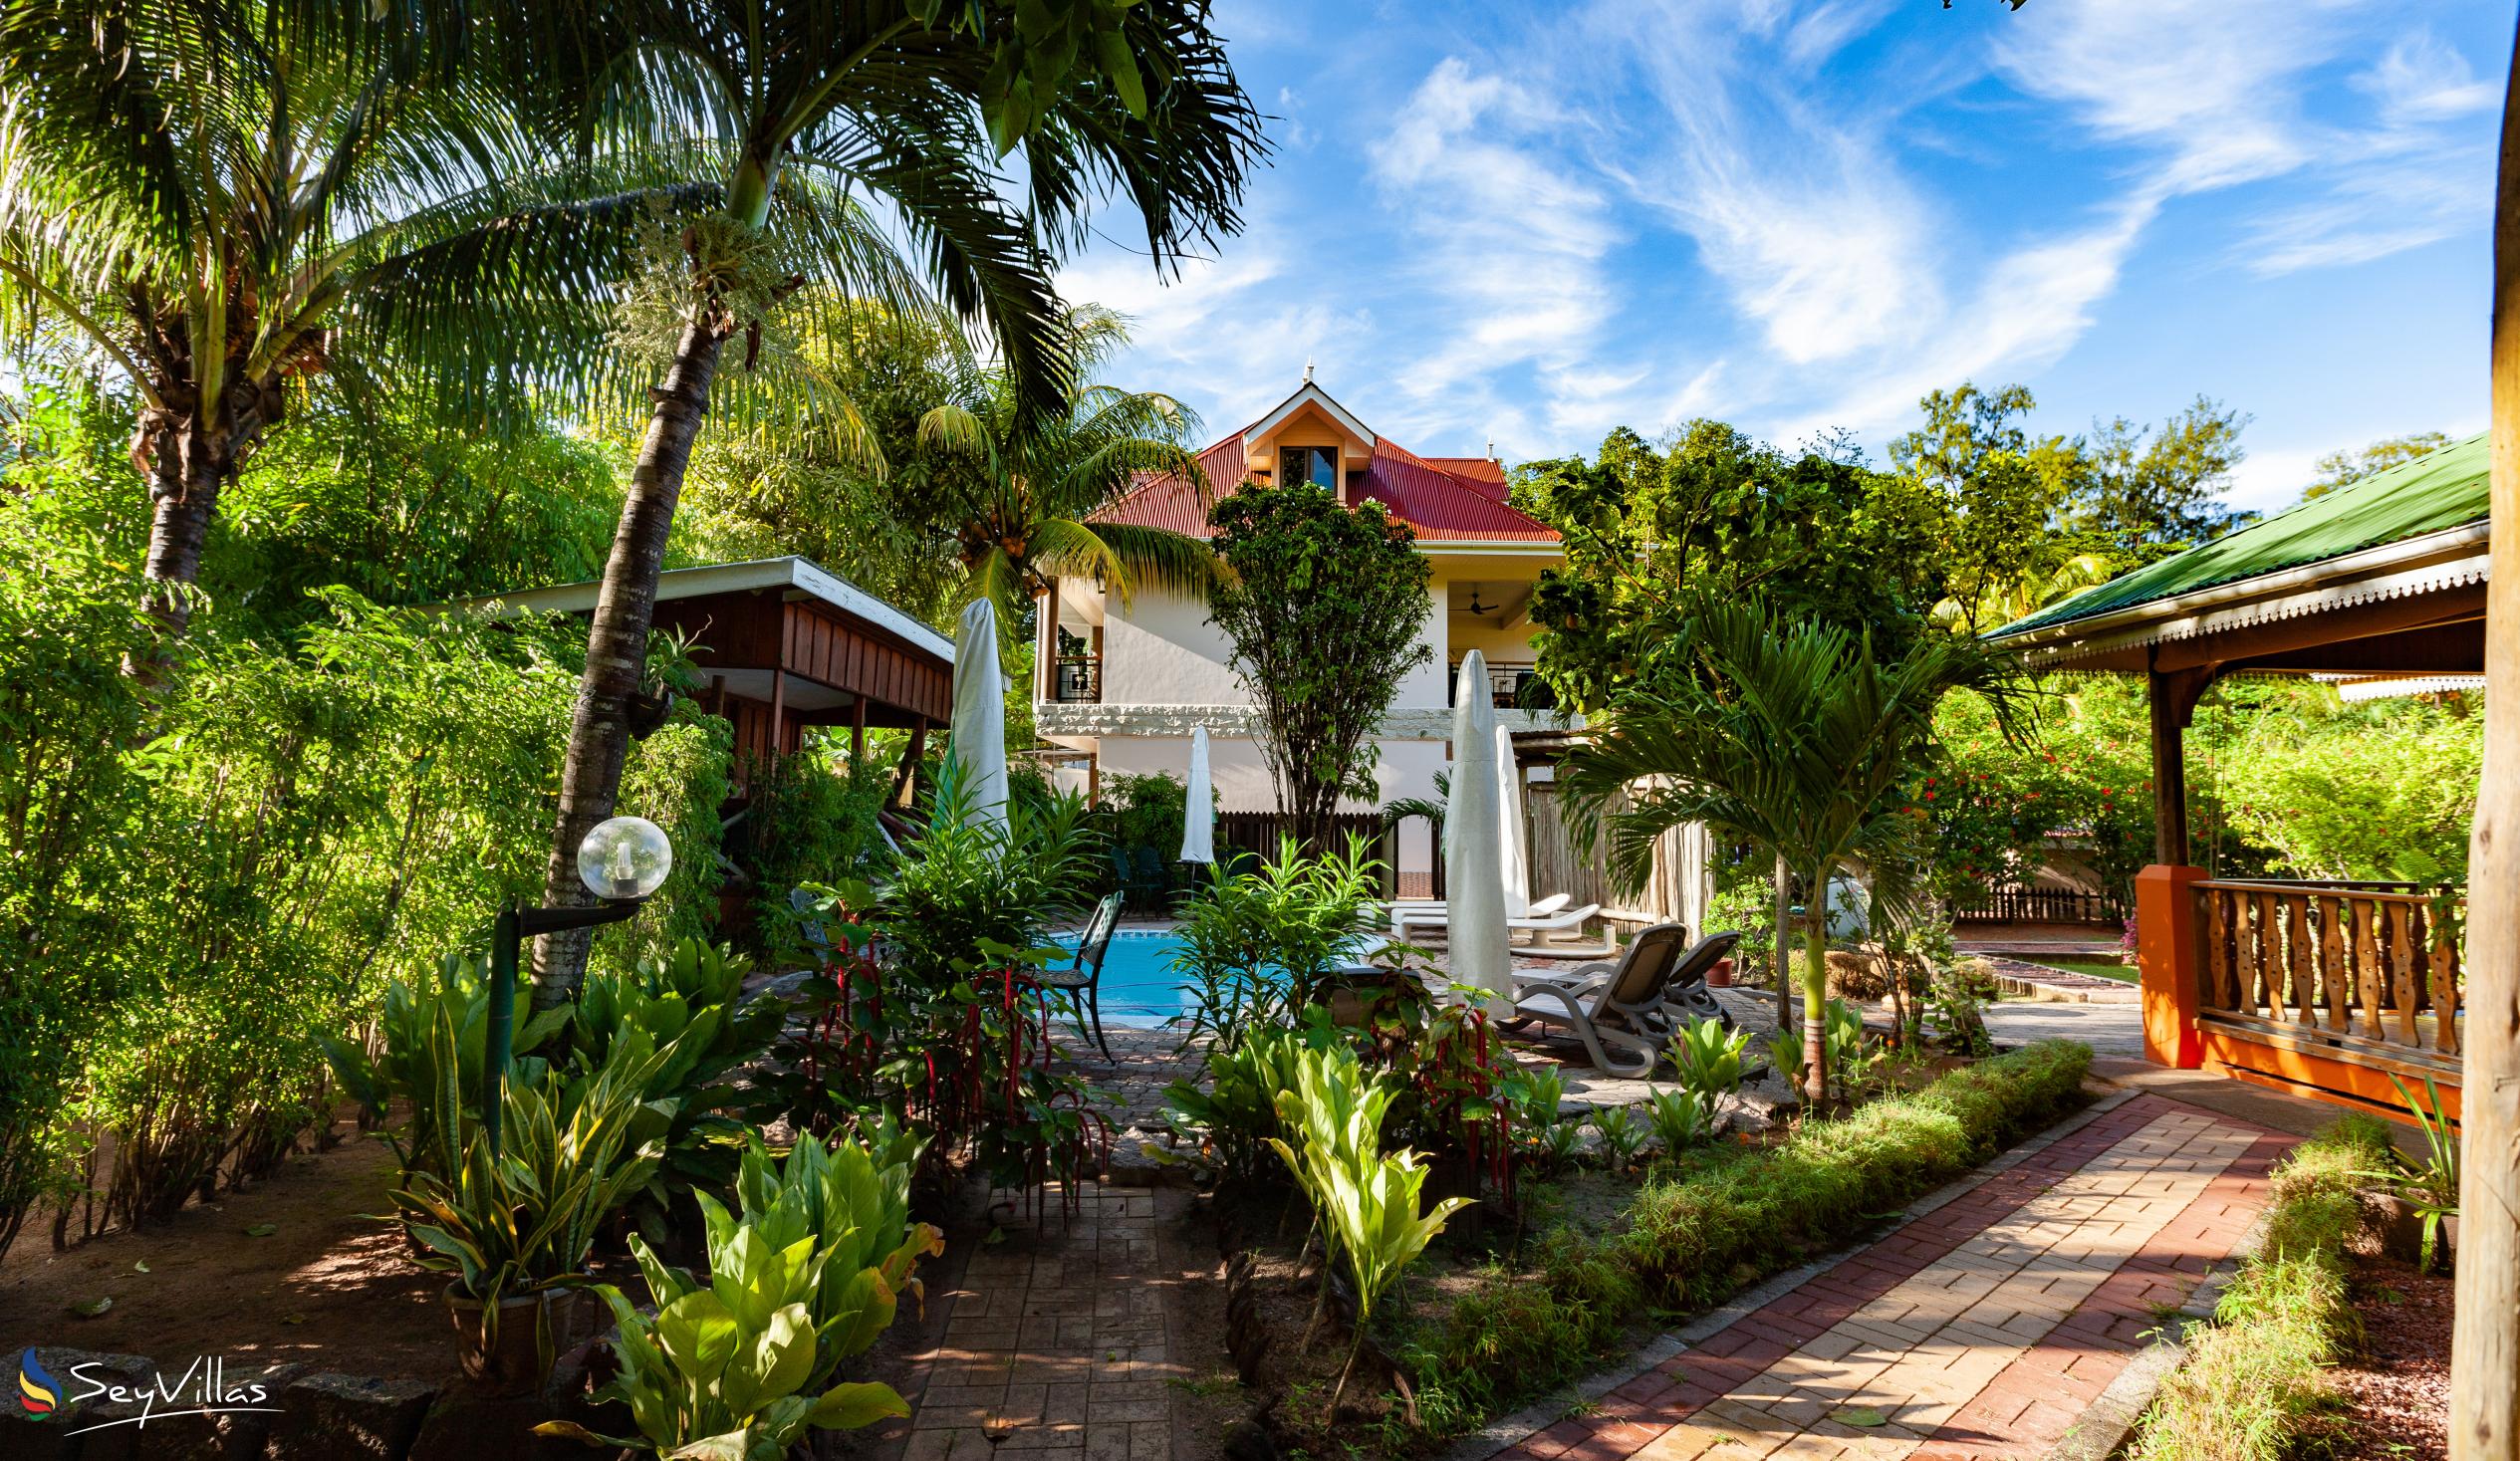 Photo 159: Casa de Leela - Deluxe Apartment - La Digue (Seychelles)